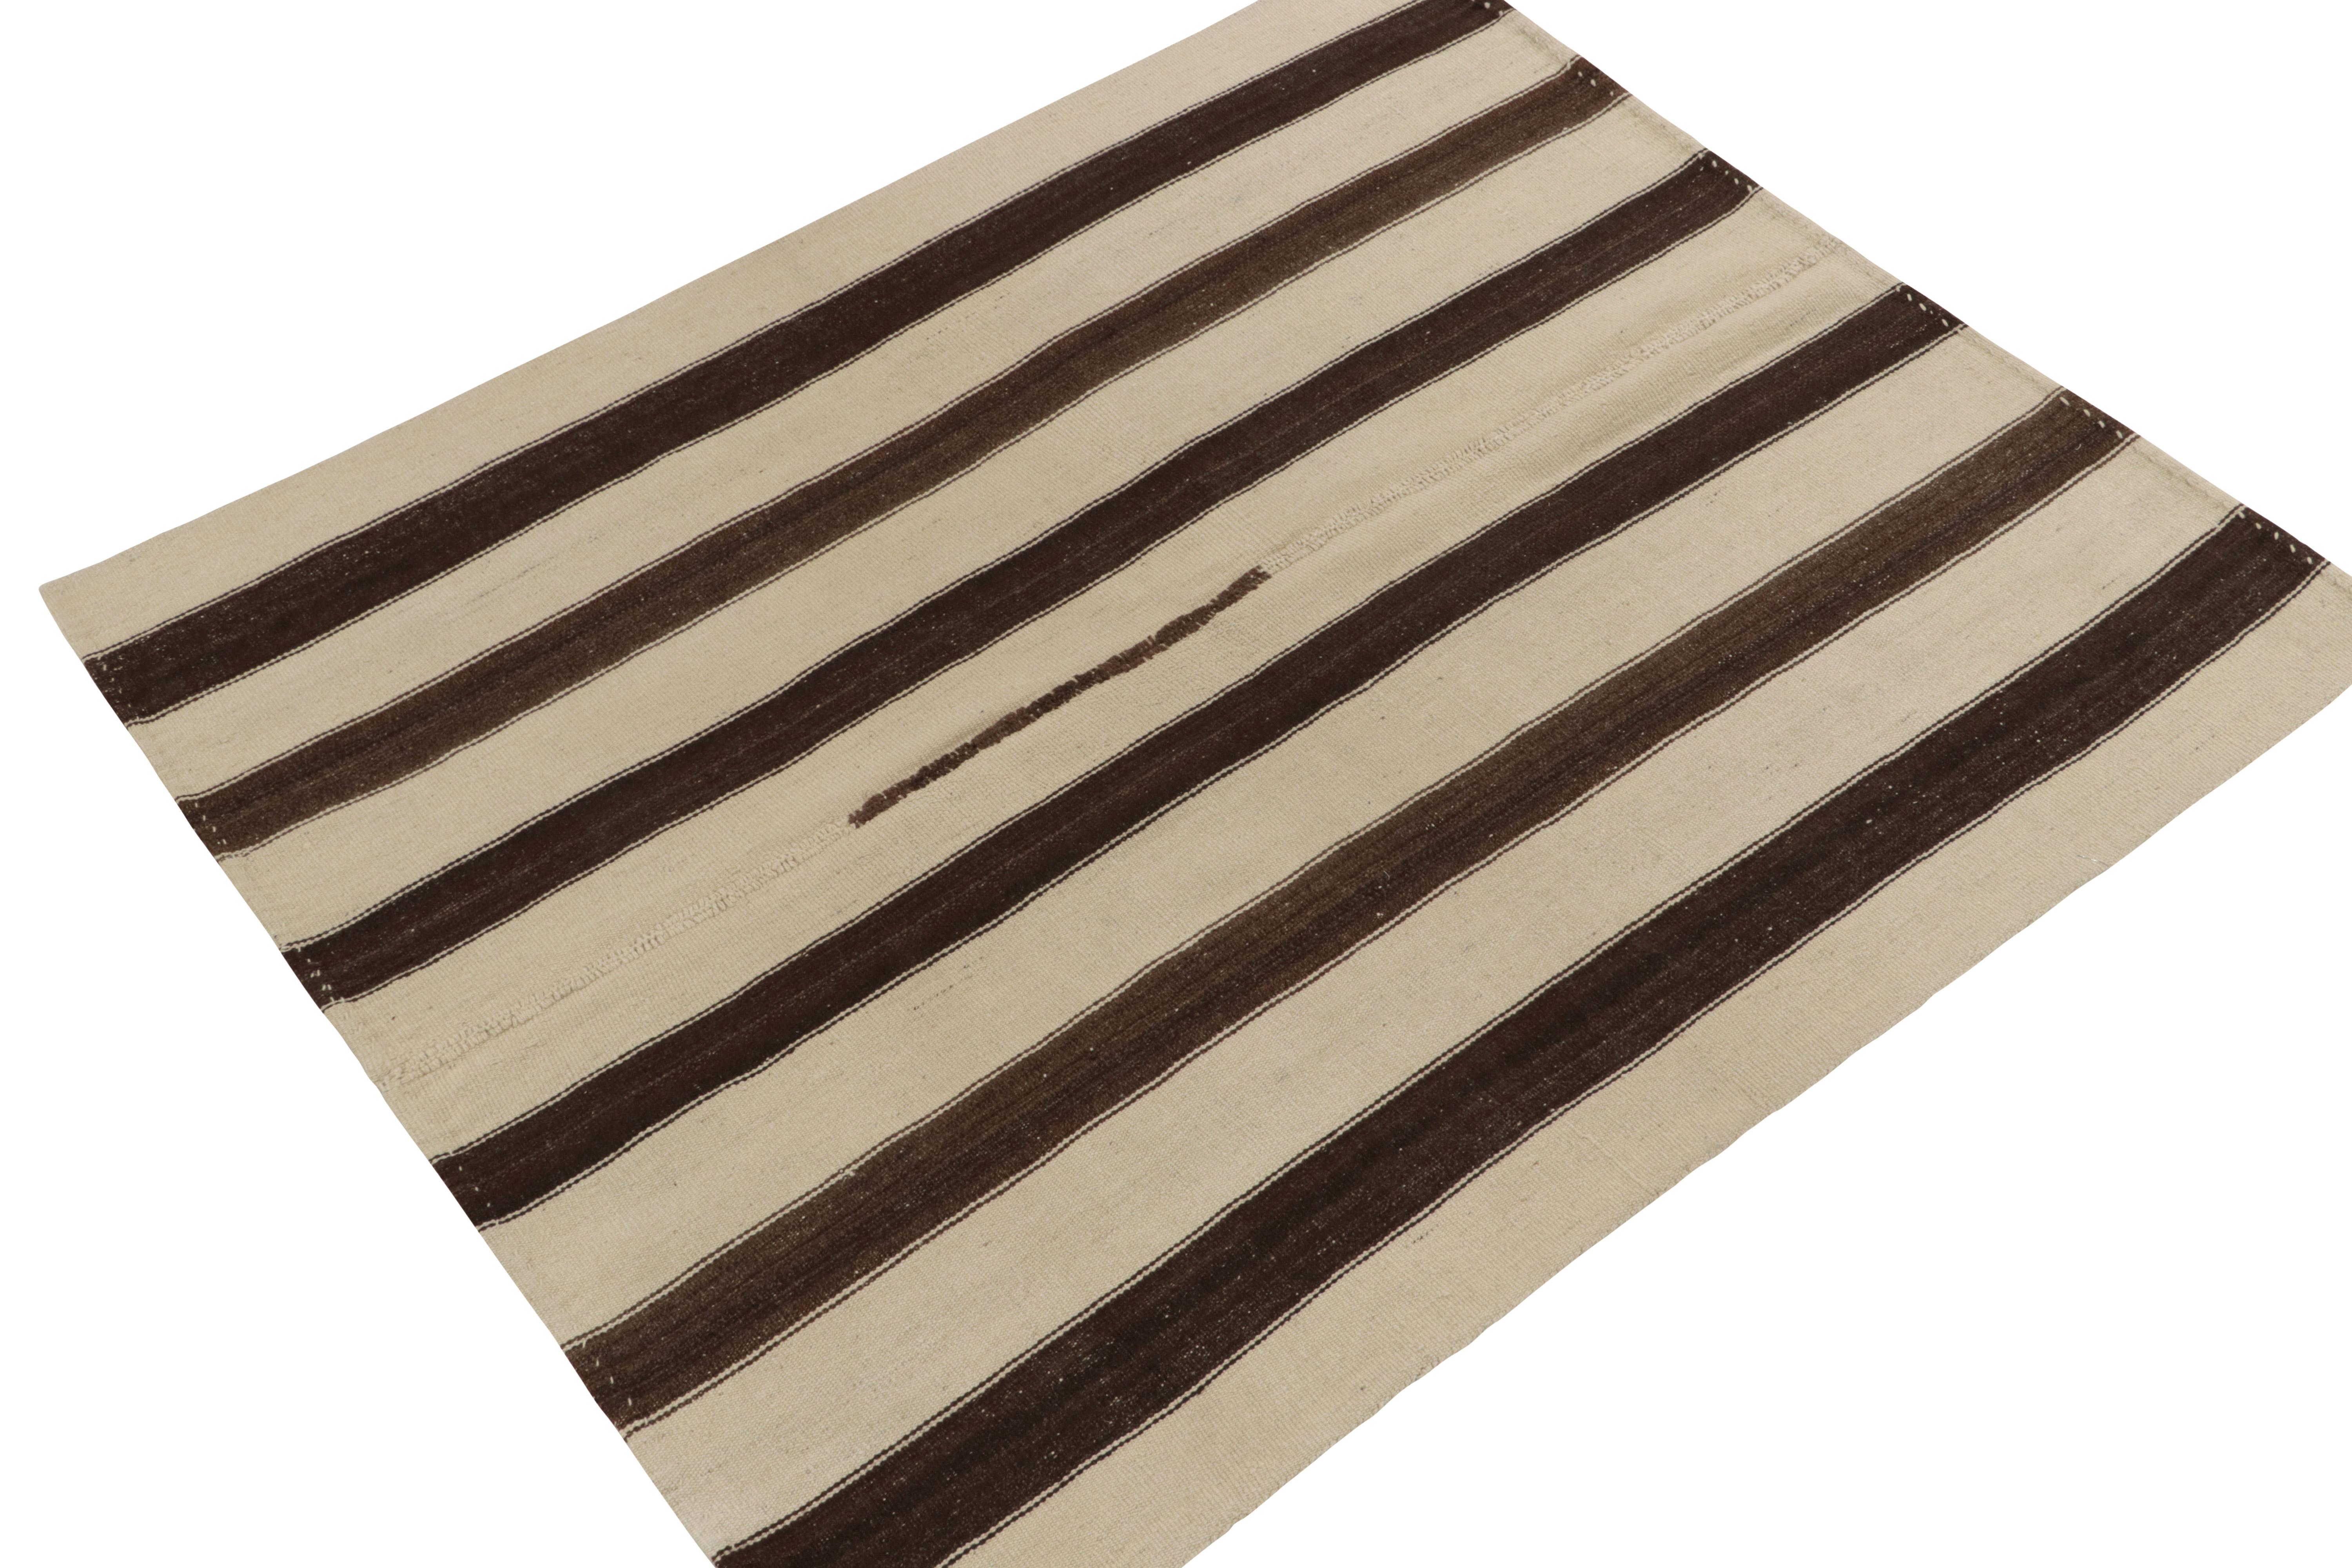 Un tapis kilim vintage 5x6 de nos sélections de tissage plat, originaire de Turquie vers 1960-1970. Tissé à la main en laine, ce tapis présente un style distinctif de panneau tissé jouant des rayures beiges et brunes avec un attrait neutre très